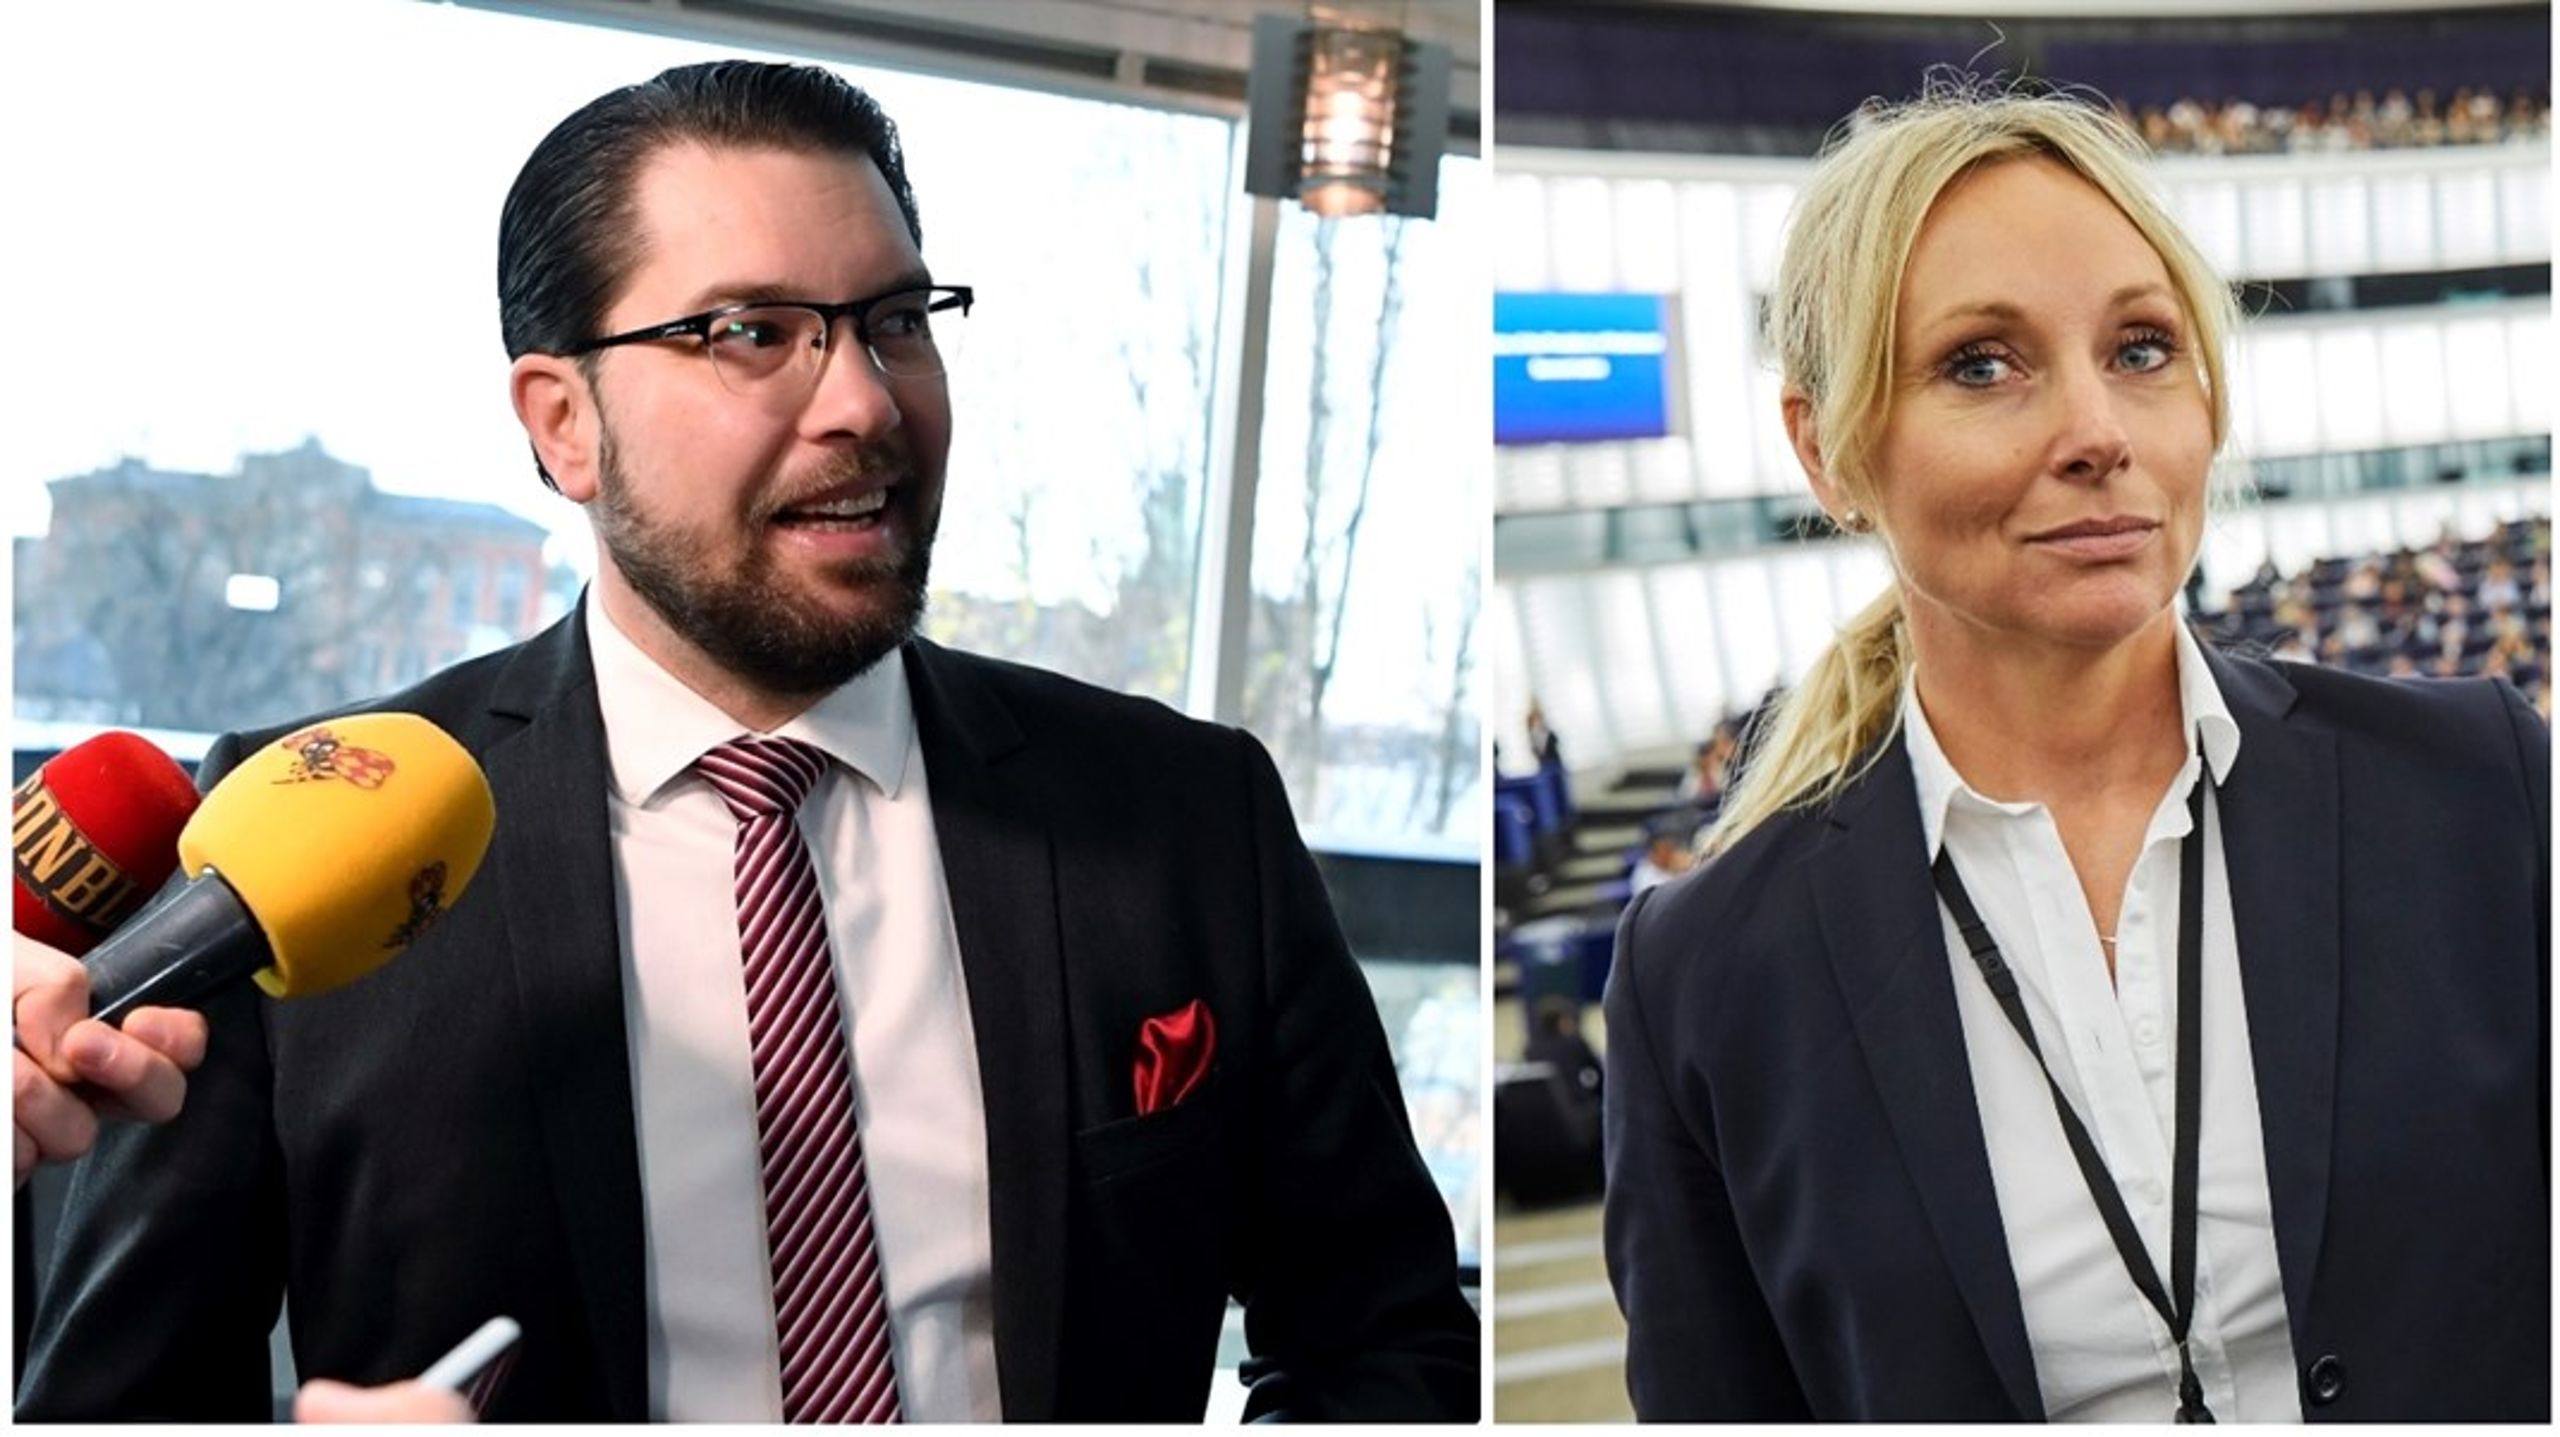 Listan toppas av partiledaren Jimmie Åkesson. Ett av de nya namnen som vill till riksdagen är europaparlamentarikern Jessica Stegrud.